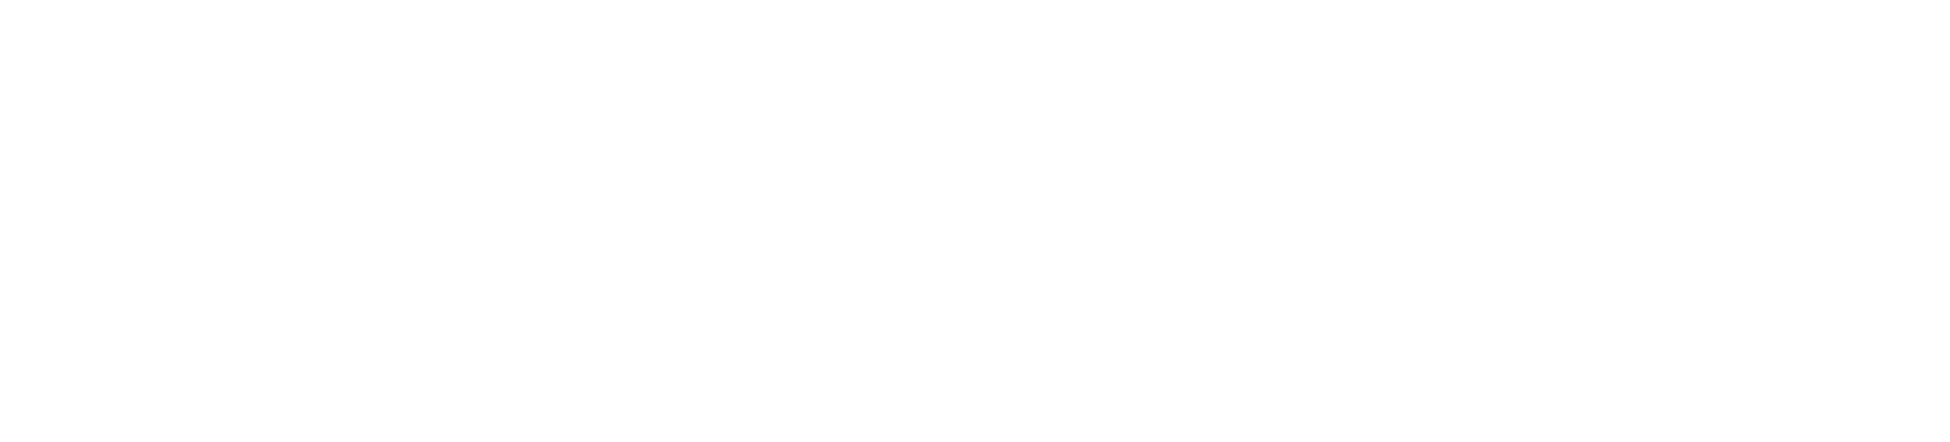 apex legal institute